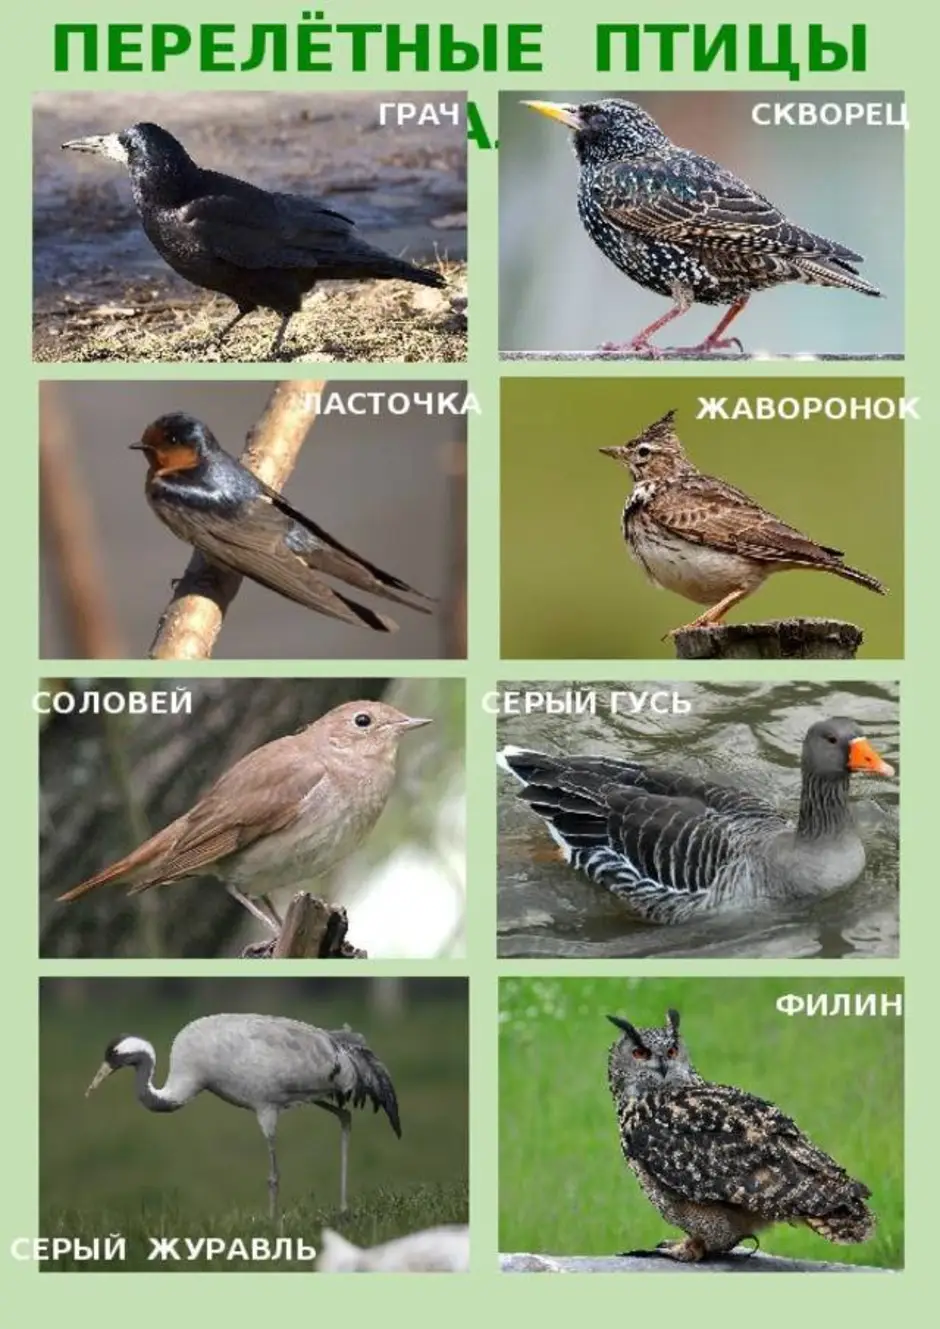 Птицы россии список